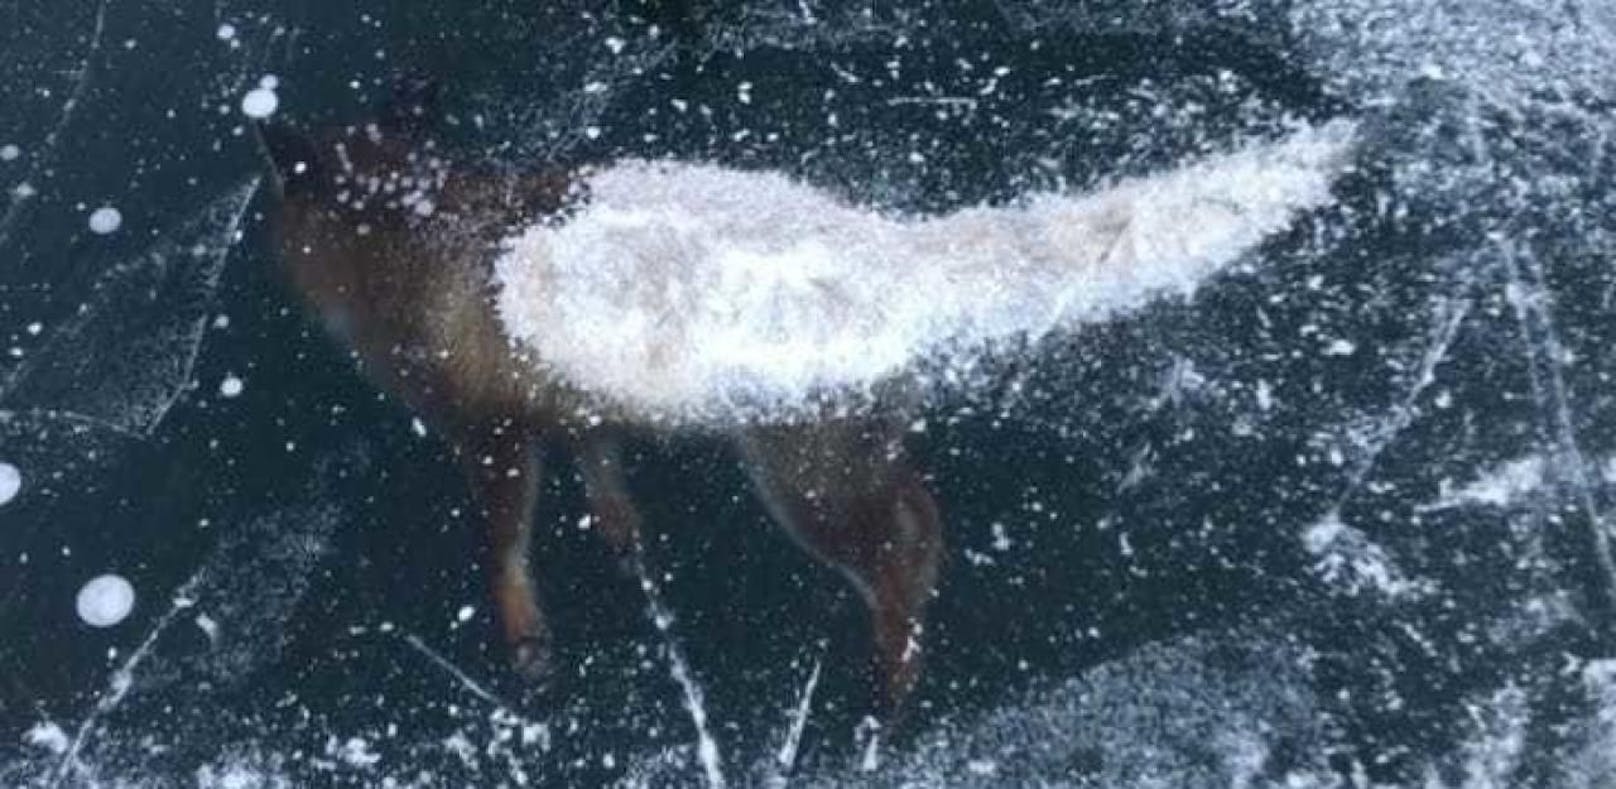 Fuchs friert nach Sturz in Weißensee in Eisdecke fest